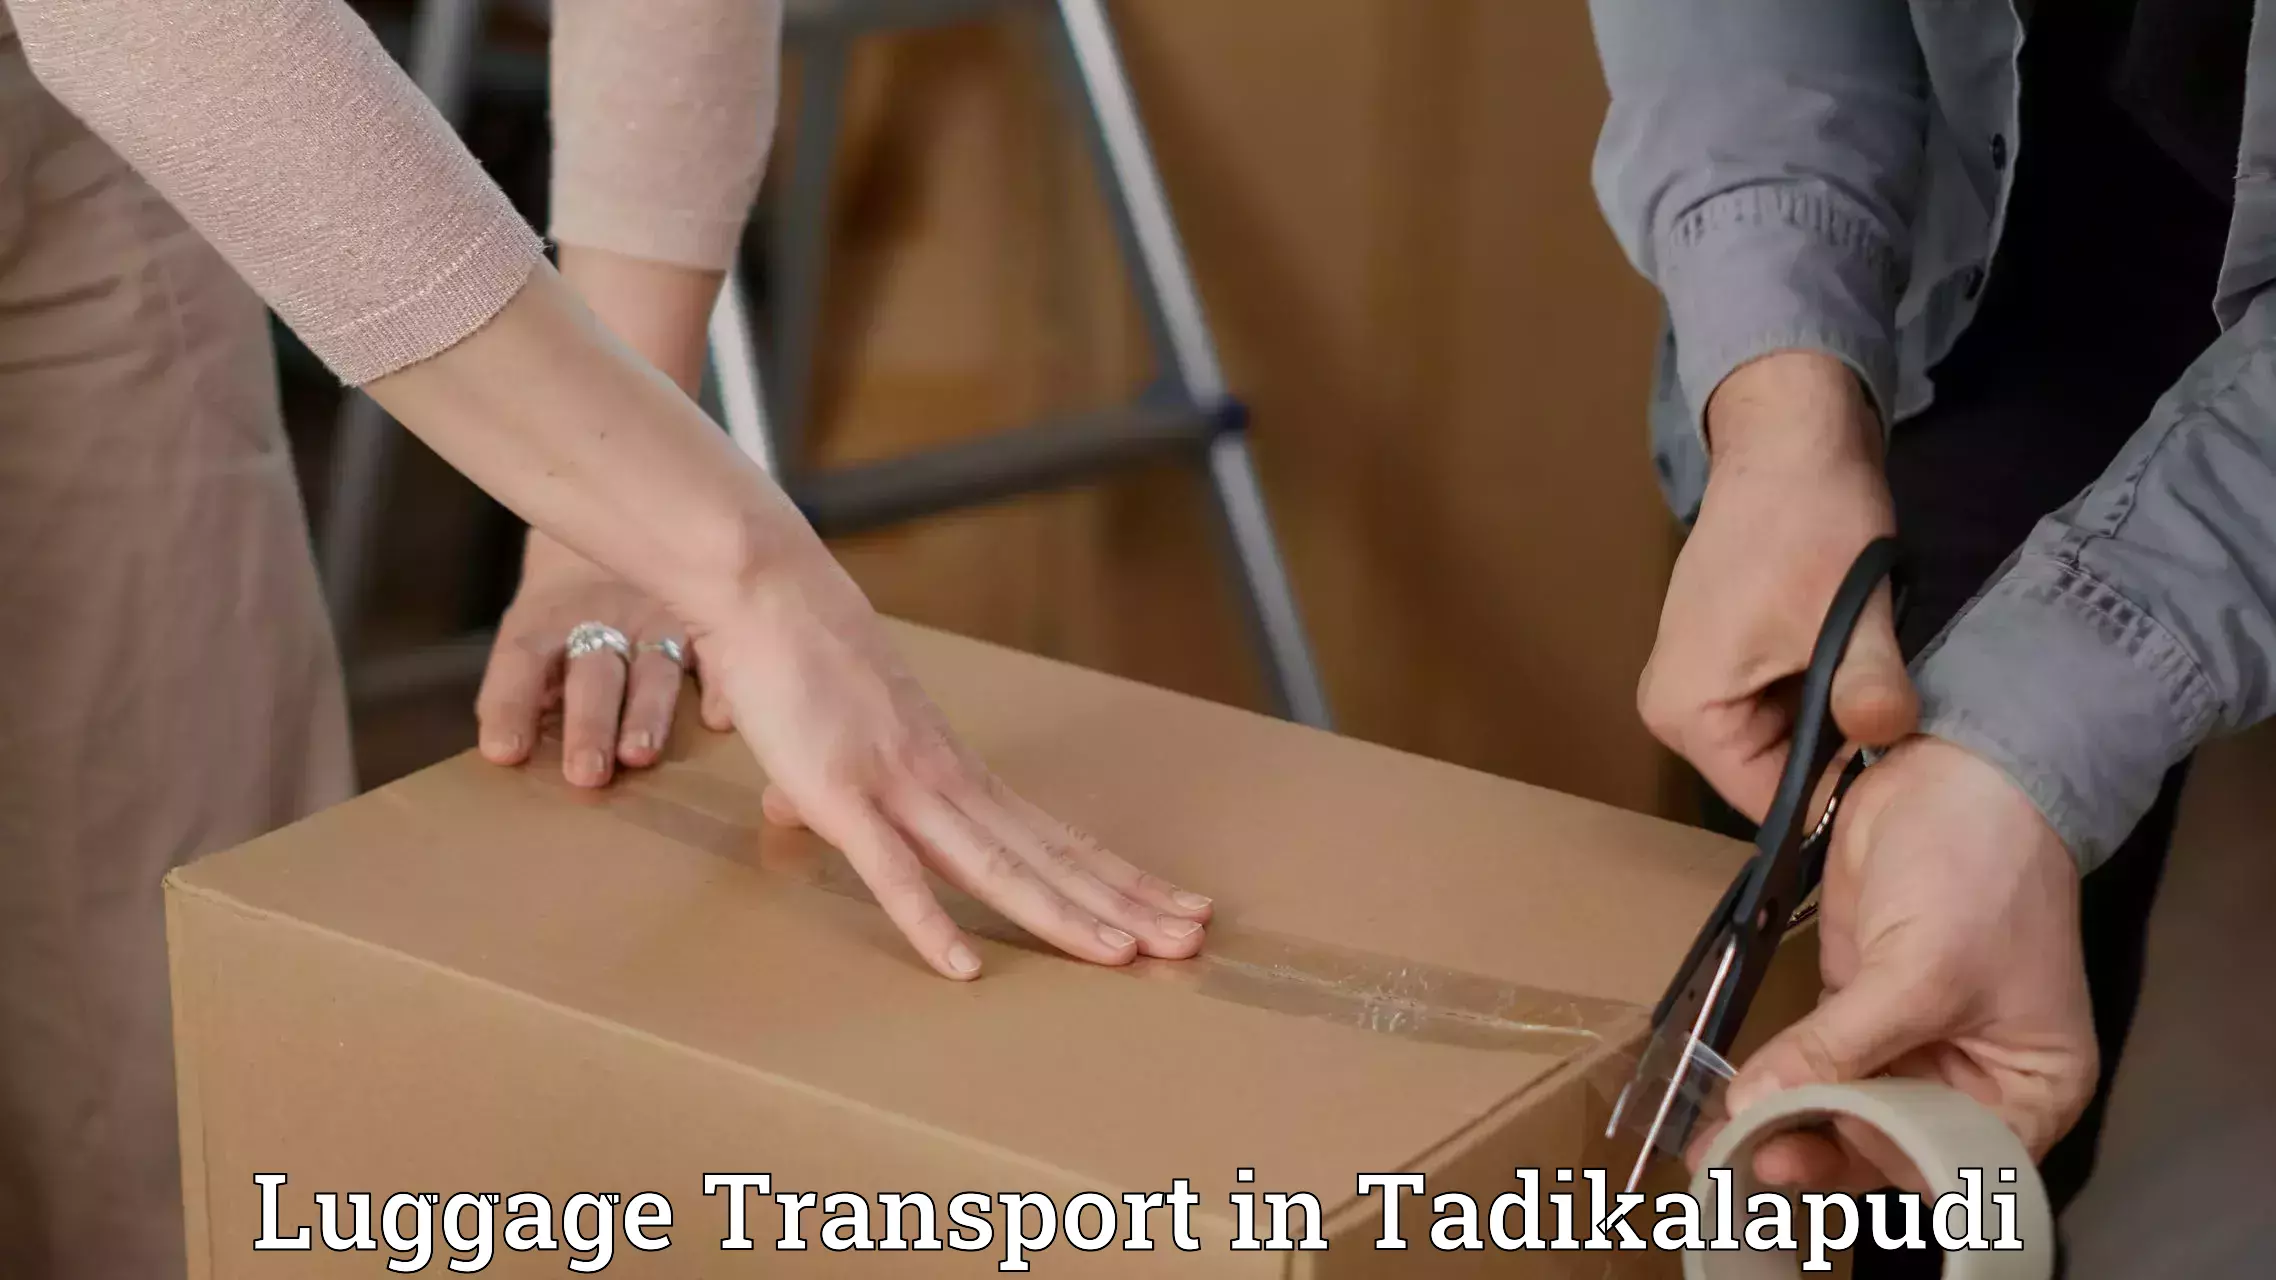 Luggage transport company in Tadikalapudi